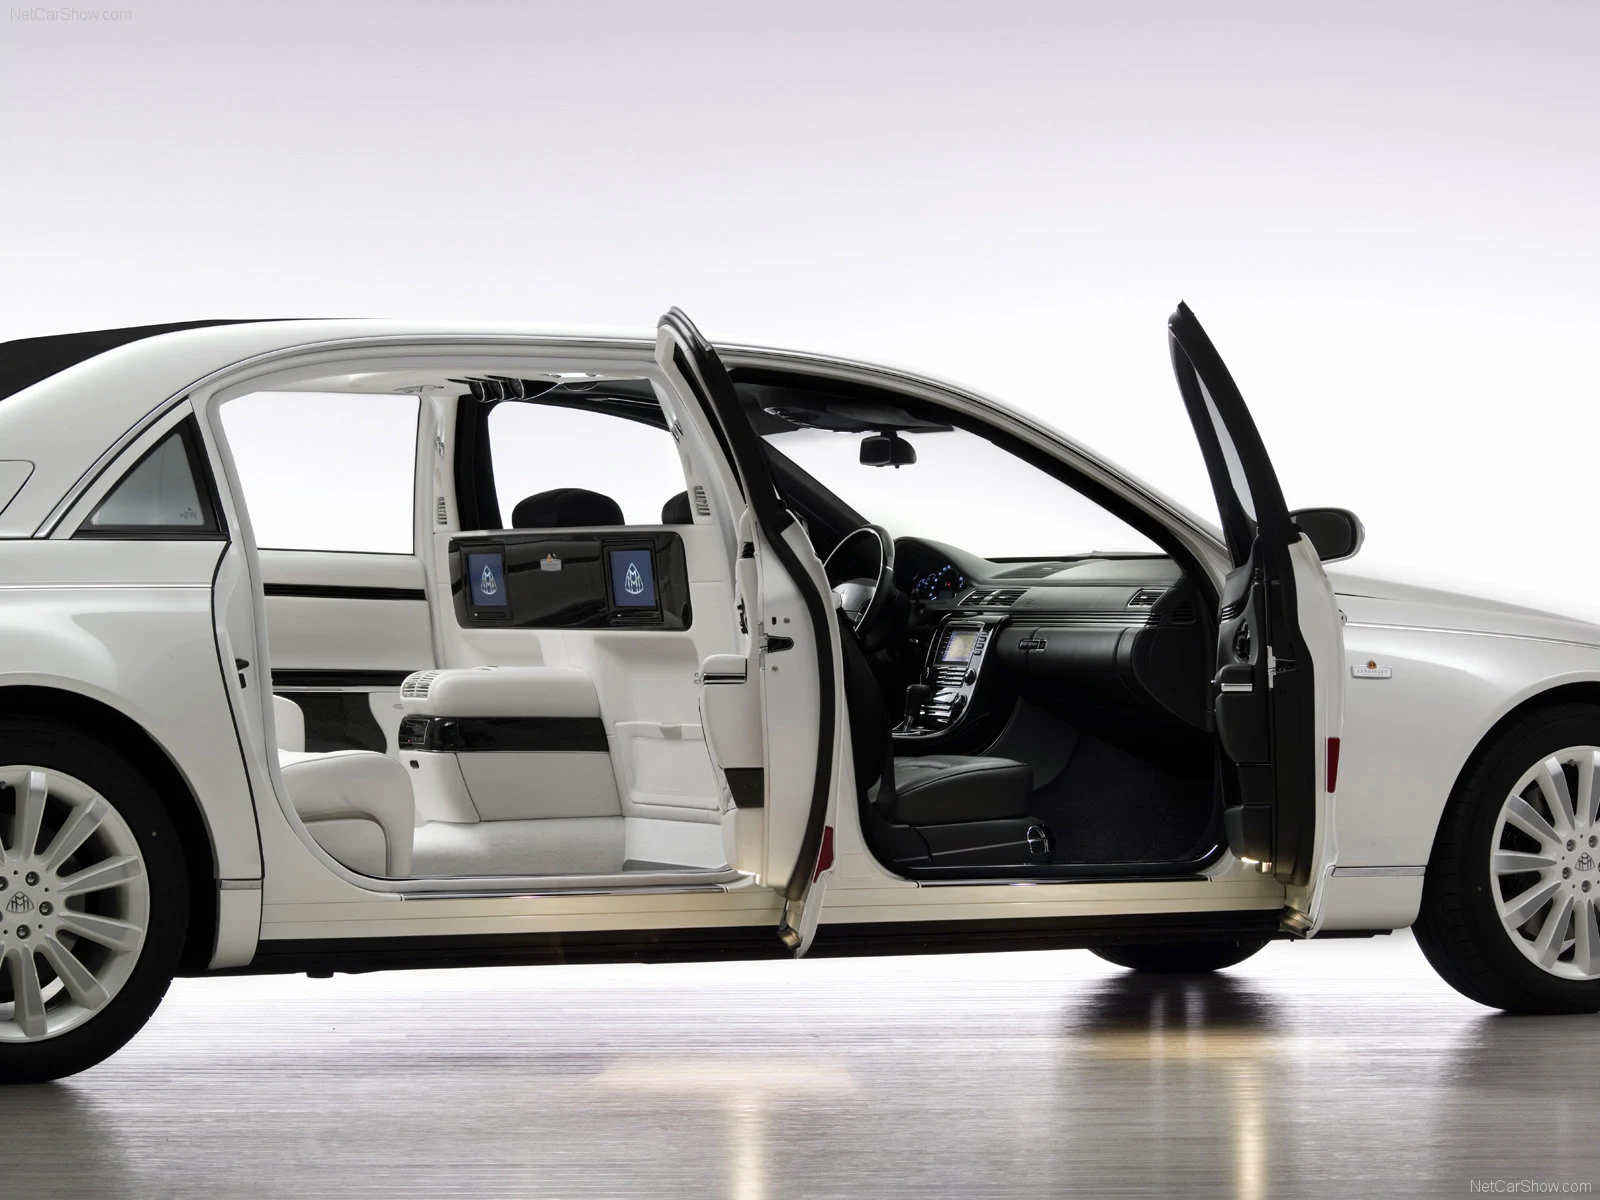 Hình ảnh xe sang Maybach Landaulet Concept 2007 & nội ngoại thất